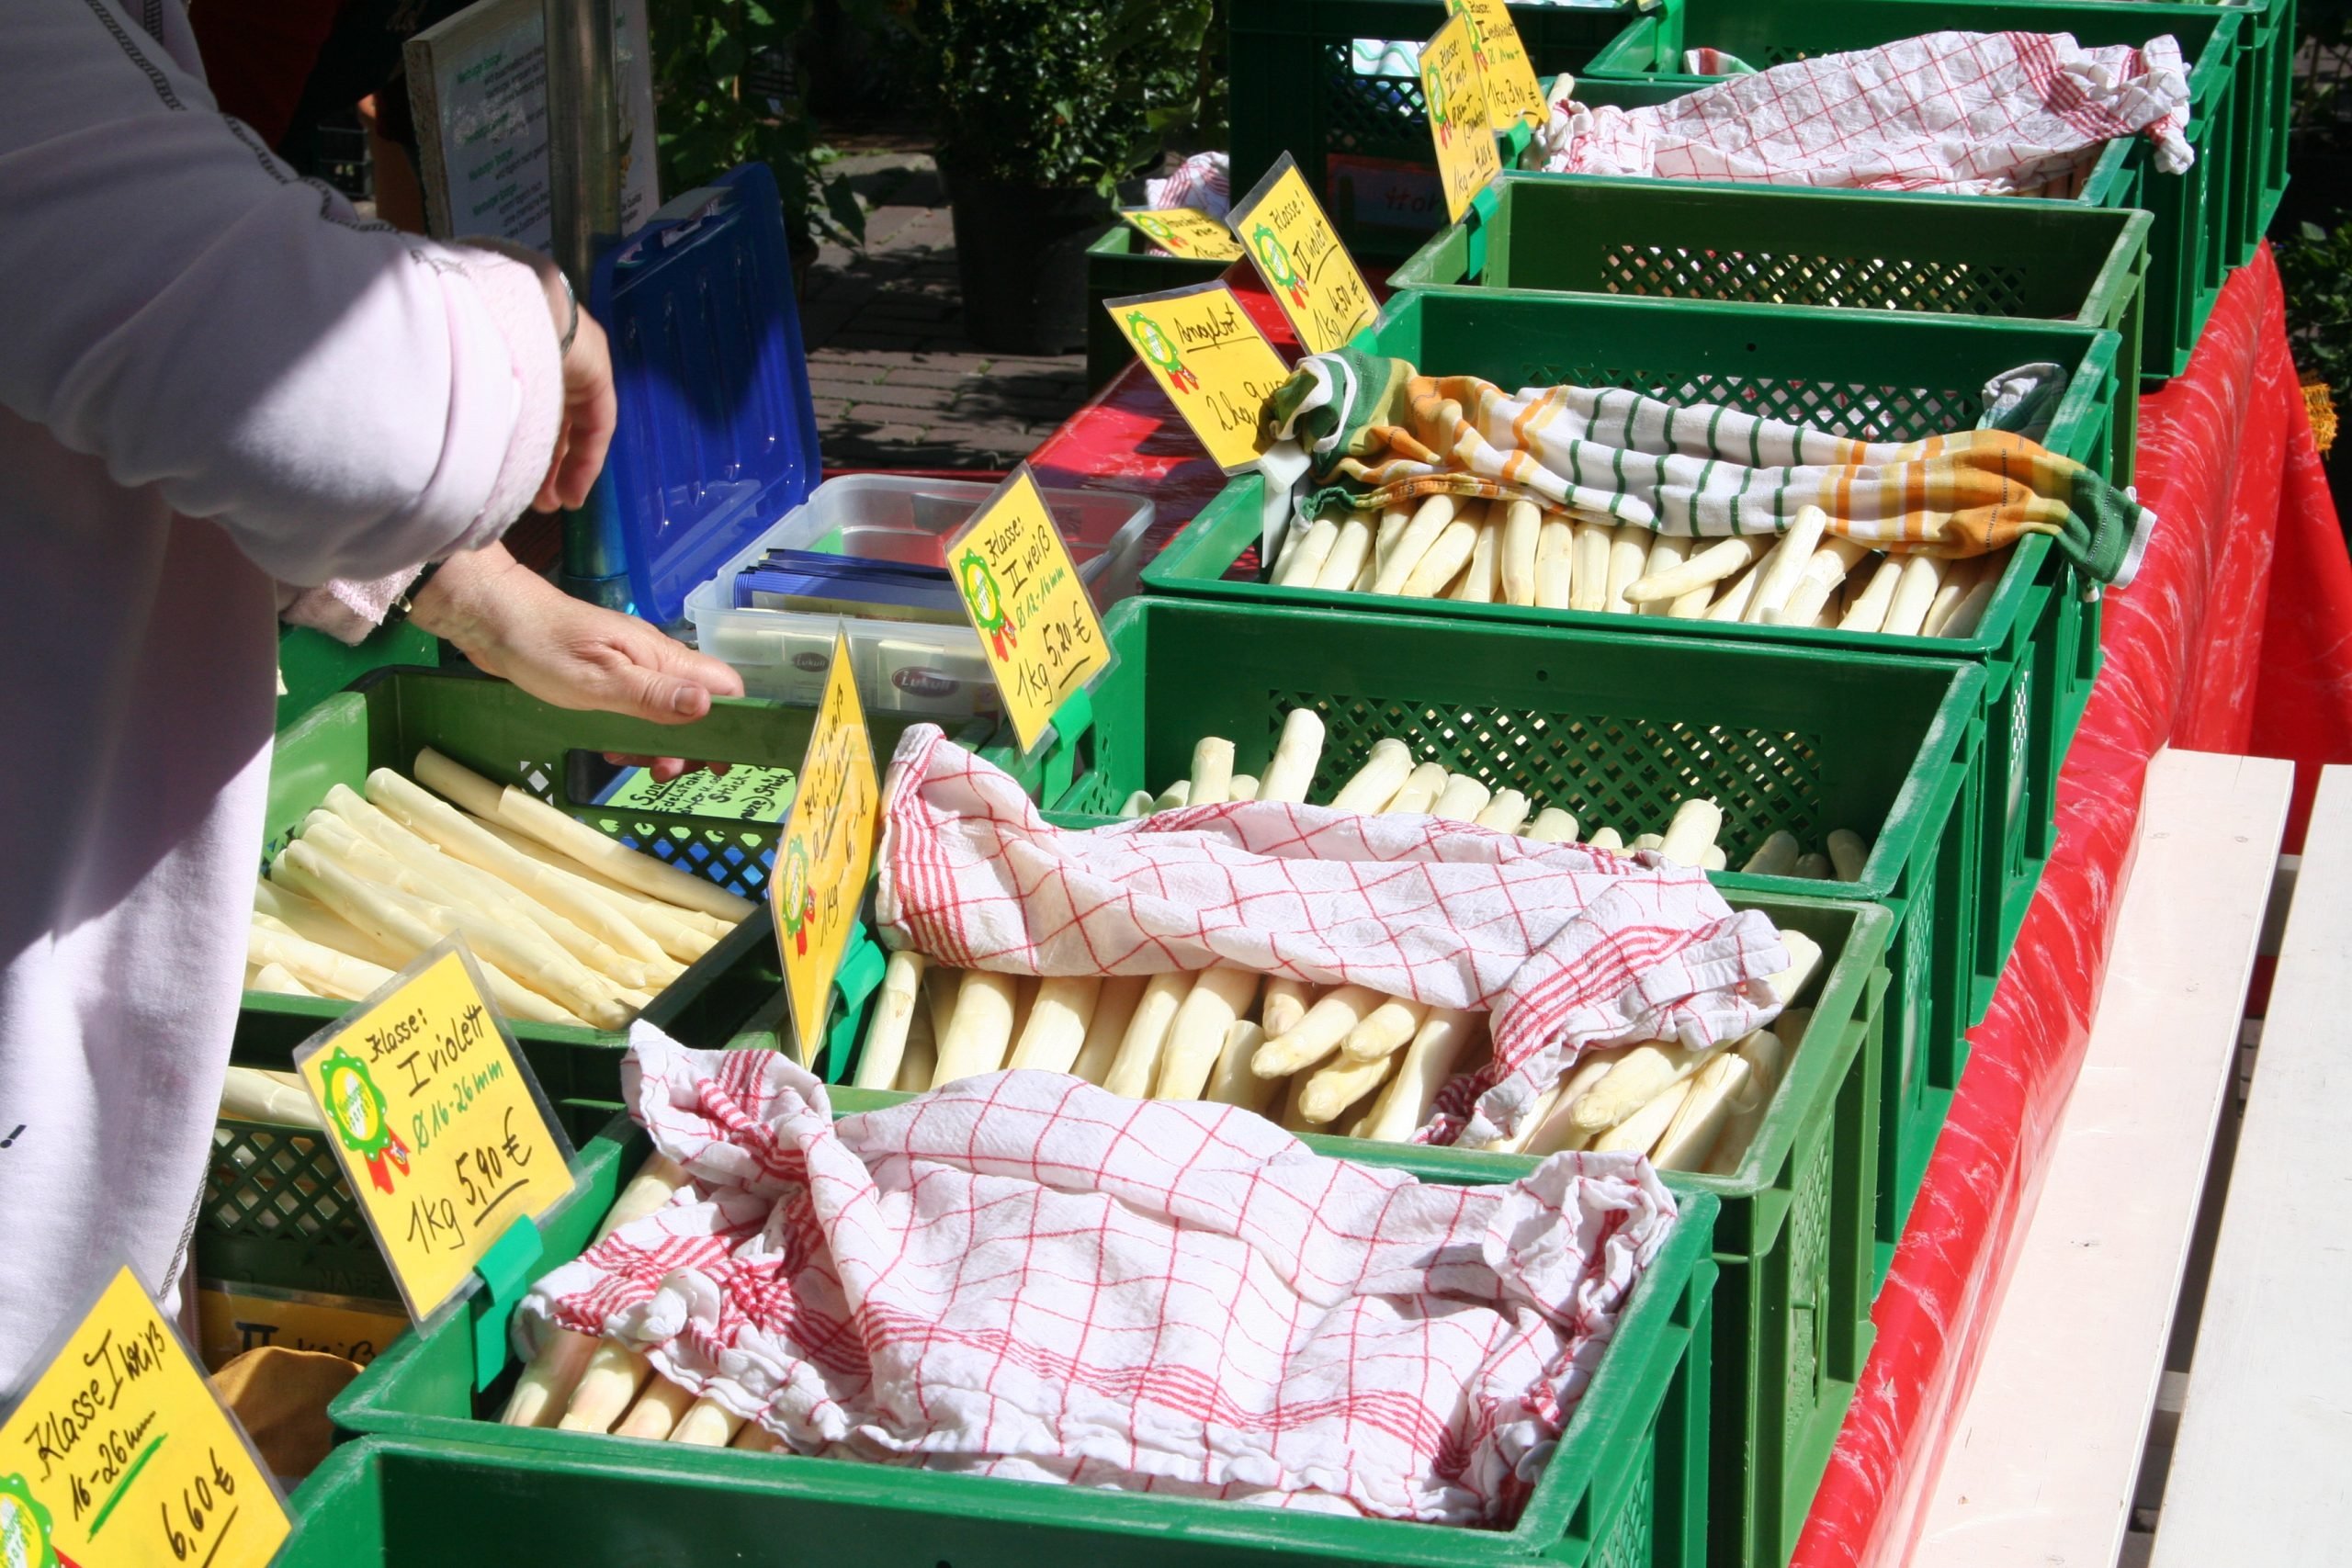 Los mercados locales dan buena cuenta de los espárragos blancos. (Foto: Ruta del espárrago de Baja Sajonia)